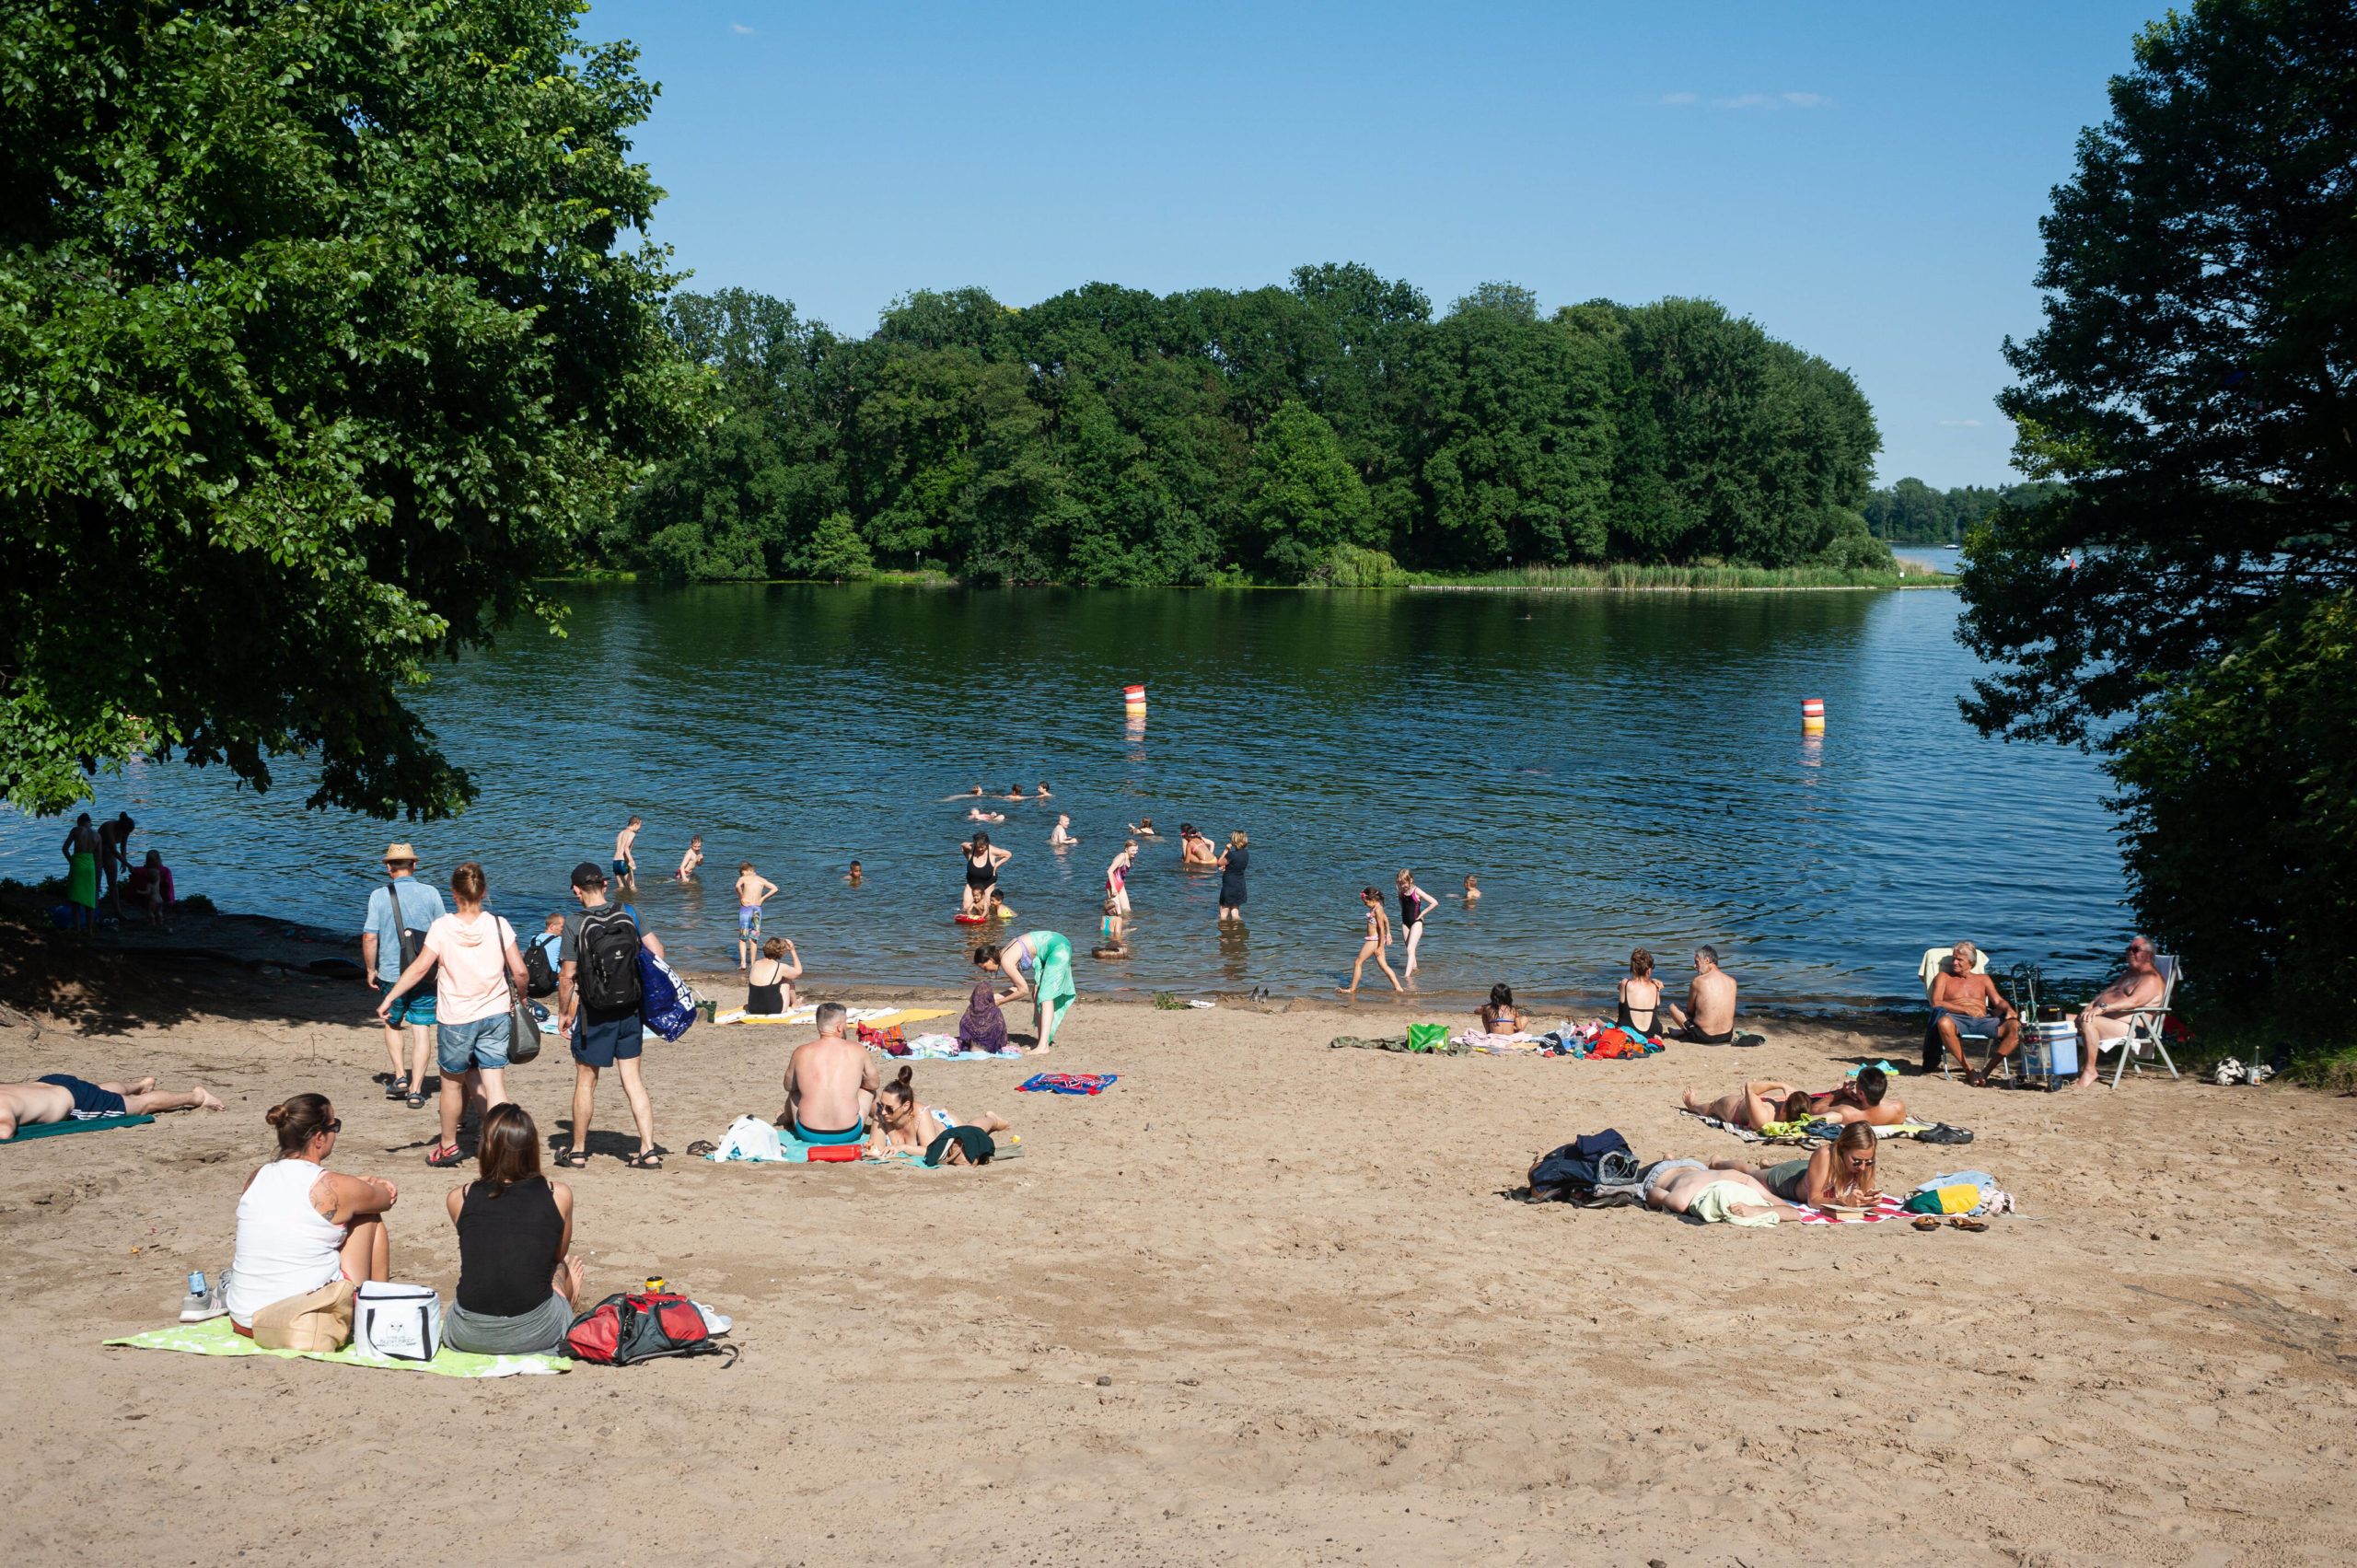 die besten Badeseen in Berlin Der Tegeler See, neben dem Müggelsee der größte See der Stadt, bietet vier schöne Badestellen.